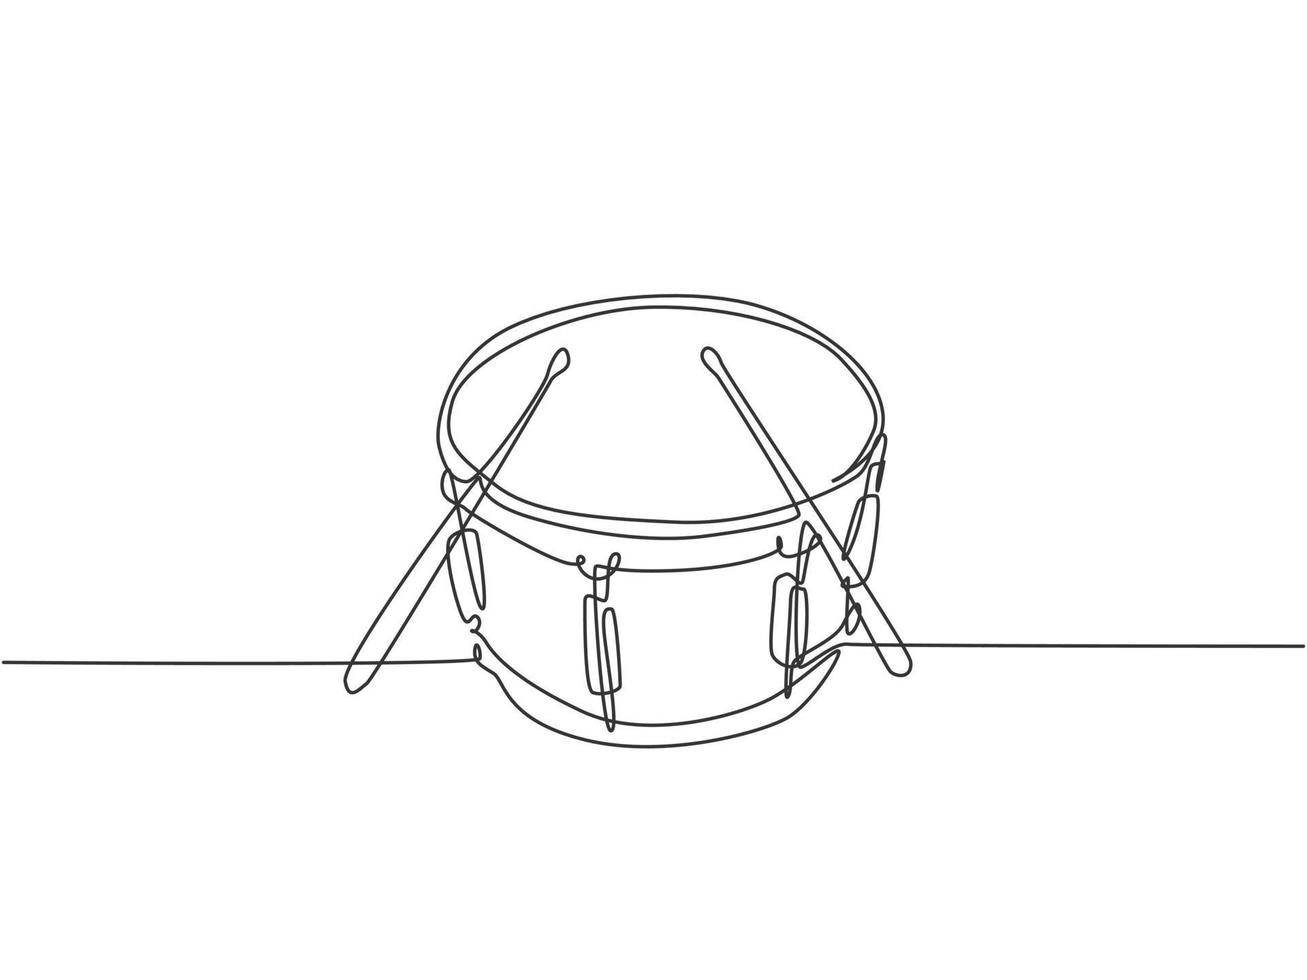 een enkele lijntekening van een kleine trommel met drumstokken. percussie muziekinstrumenten concept. dynamische doorlopende lijn tekenen ontwerp grafische vectorillustratie vector